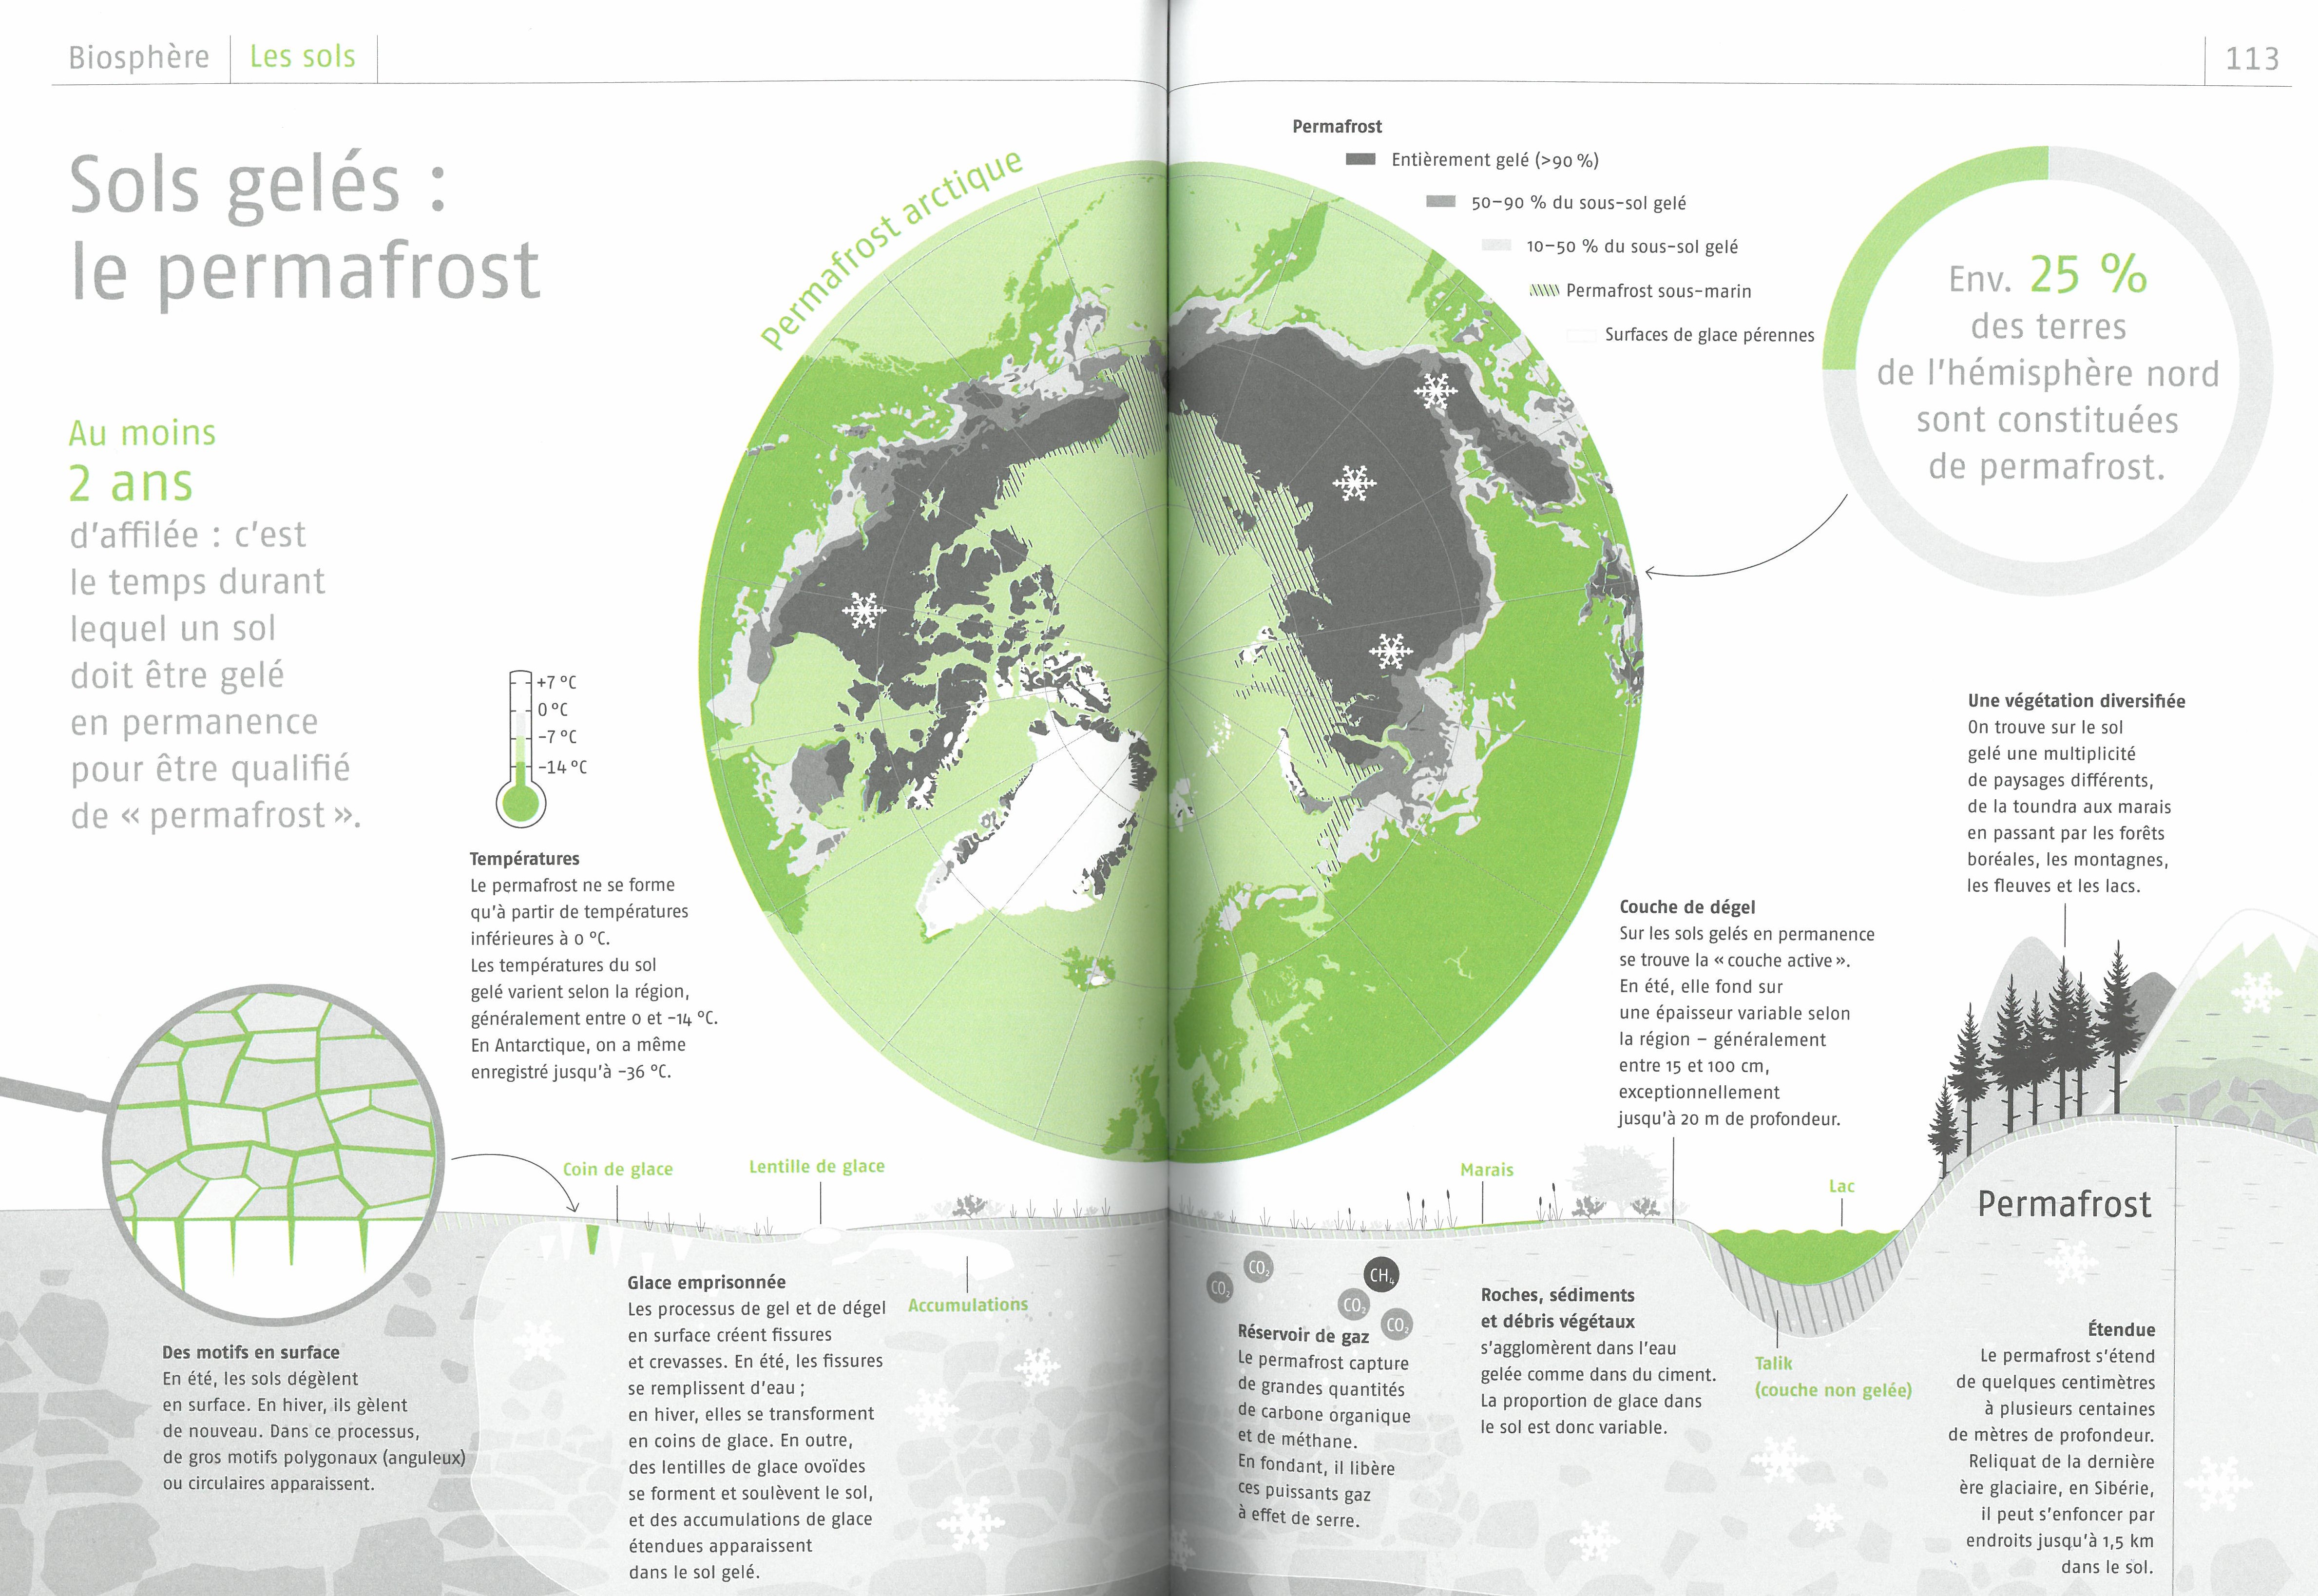 Atlas D'une Planete Menacee : 150 Infographies Pour Comprendre Les Grands Enjeux Environnementaux